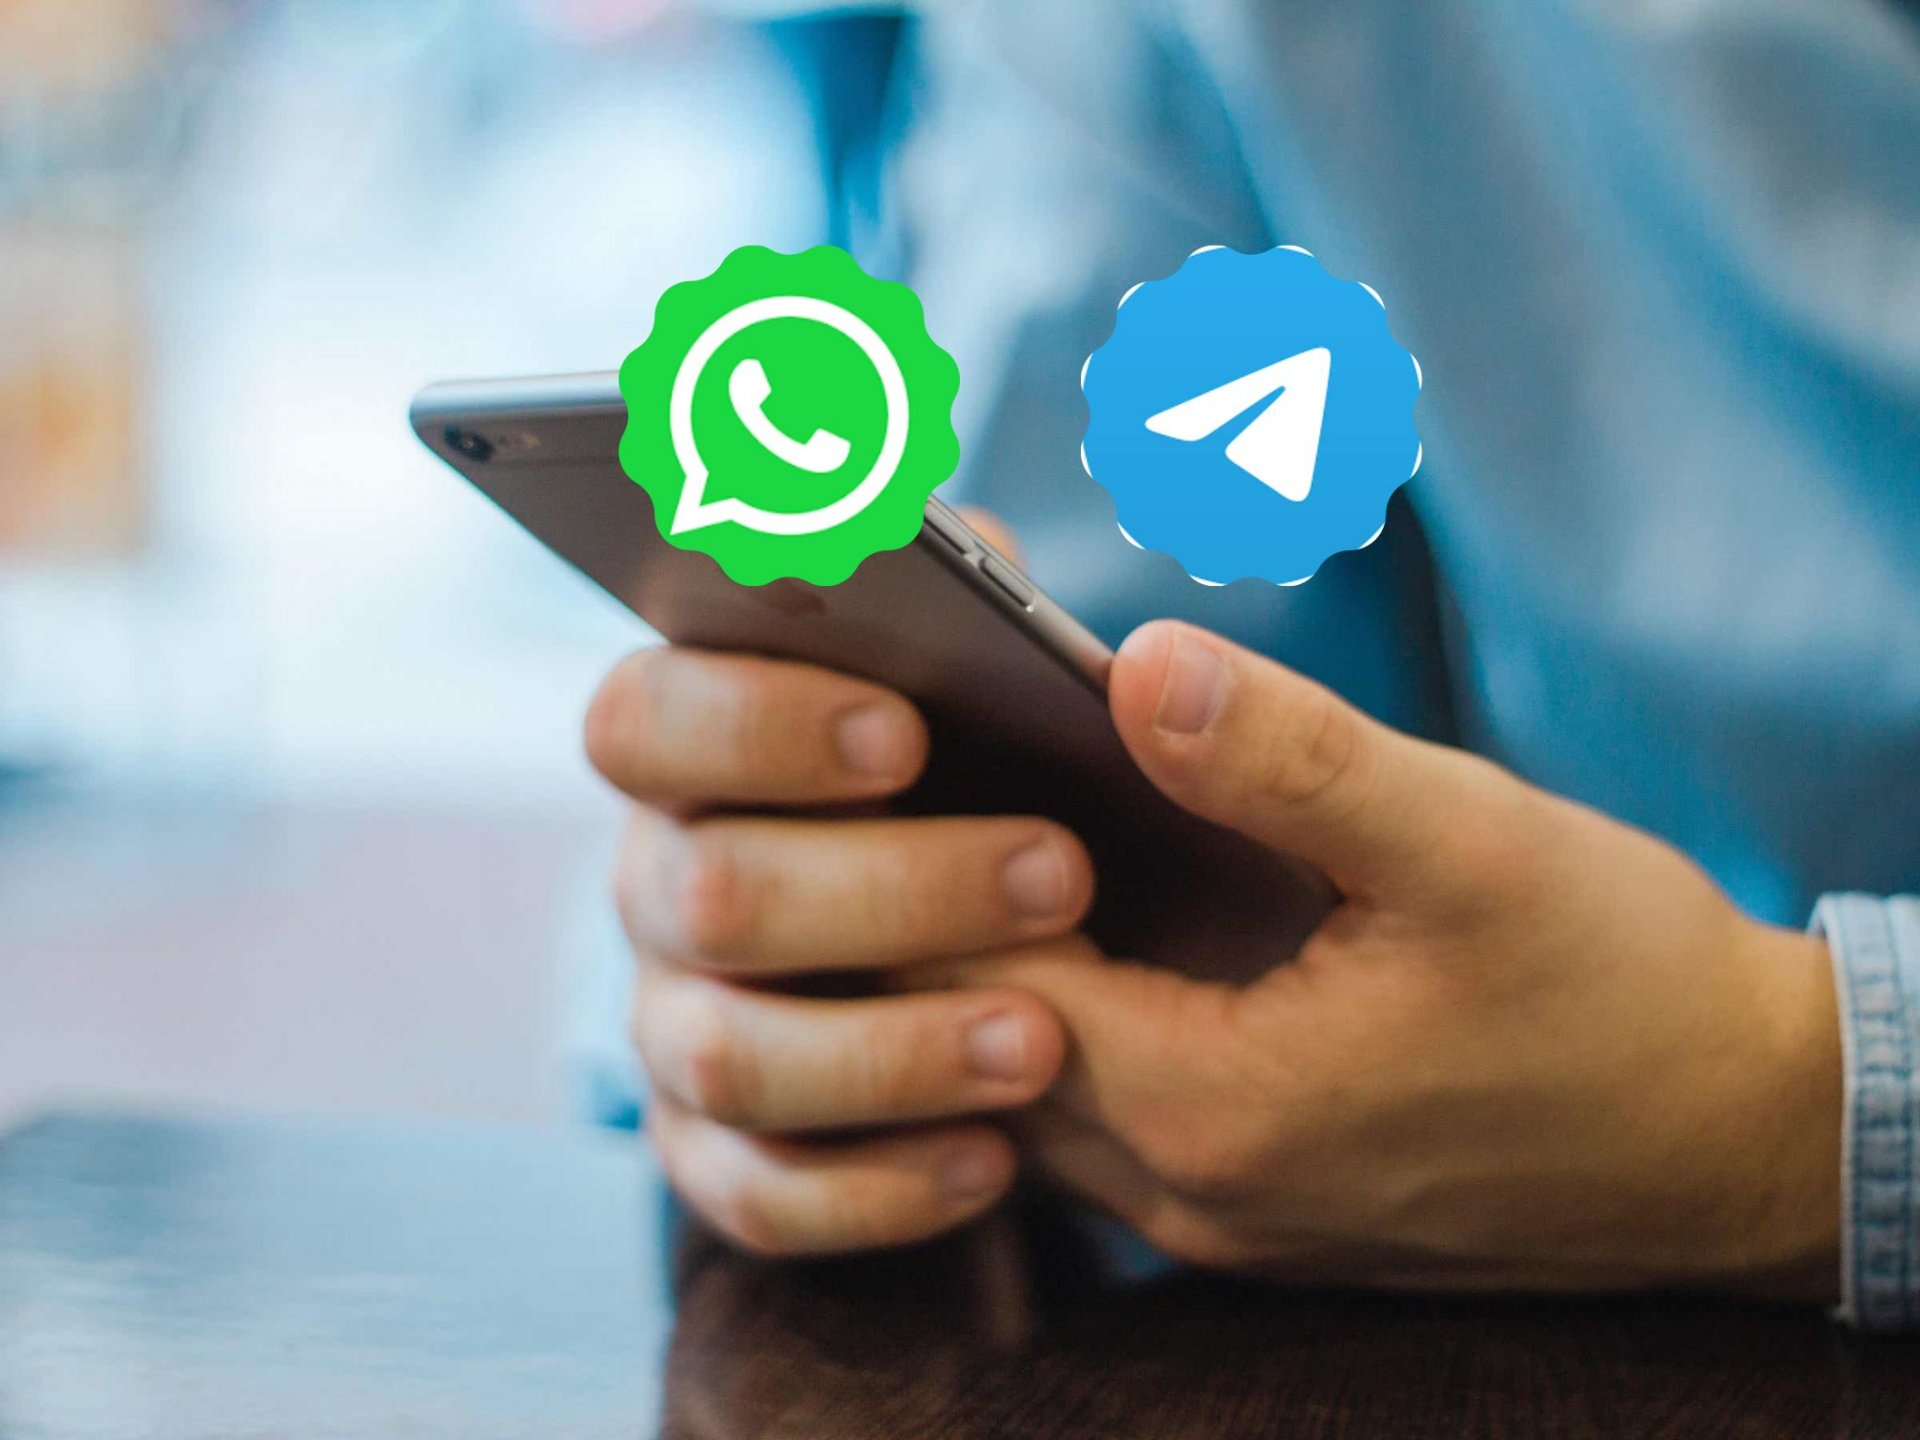 Telegram O Whatsapp Cuál Es La Mejor App De Mensajería El Economista 0274